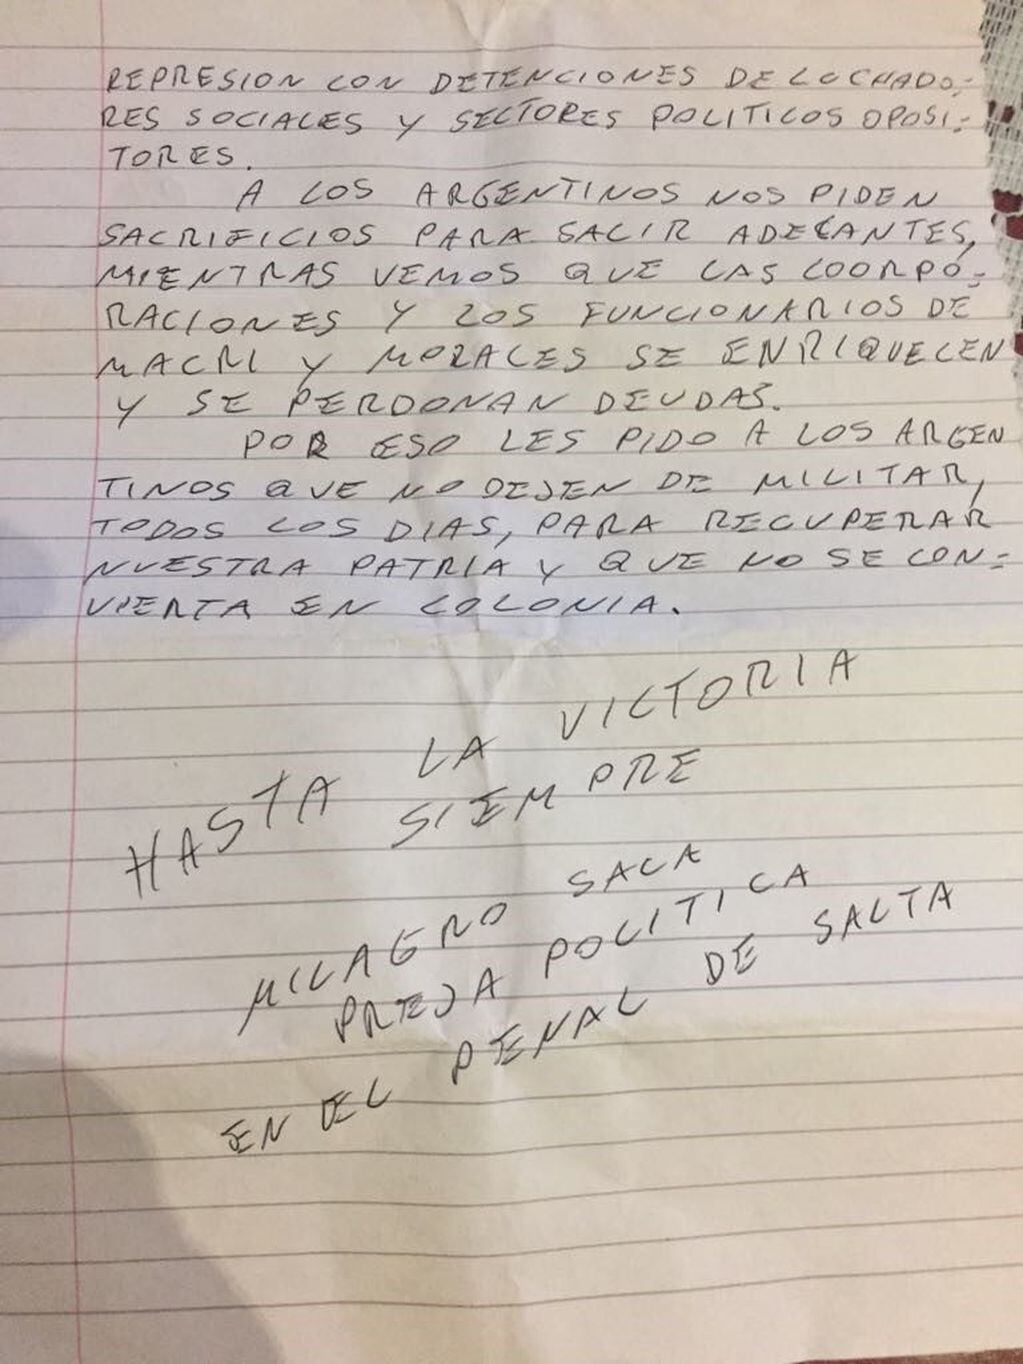 Carta escrita por la dirigente social Milagro Sala, encarcelada en el penal federal de Salta